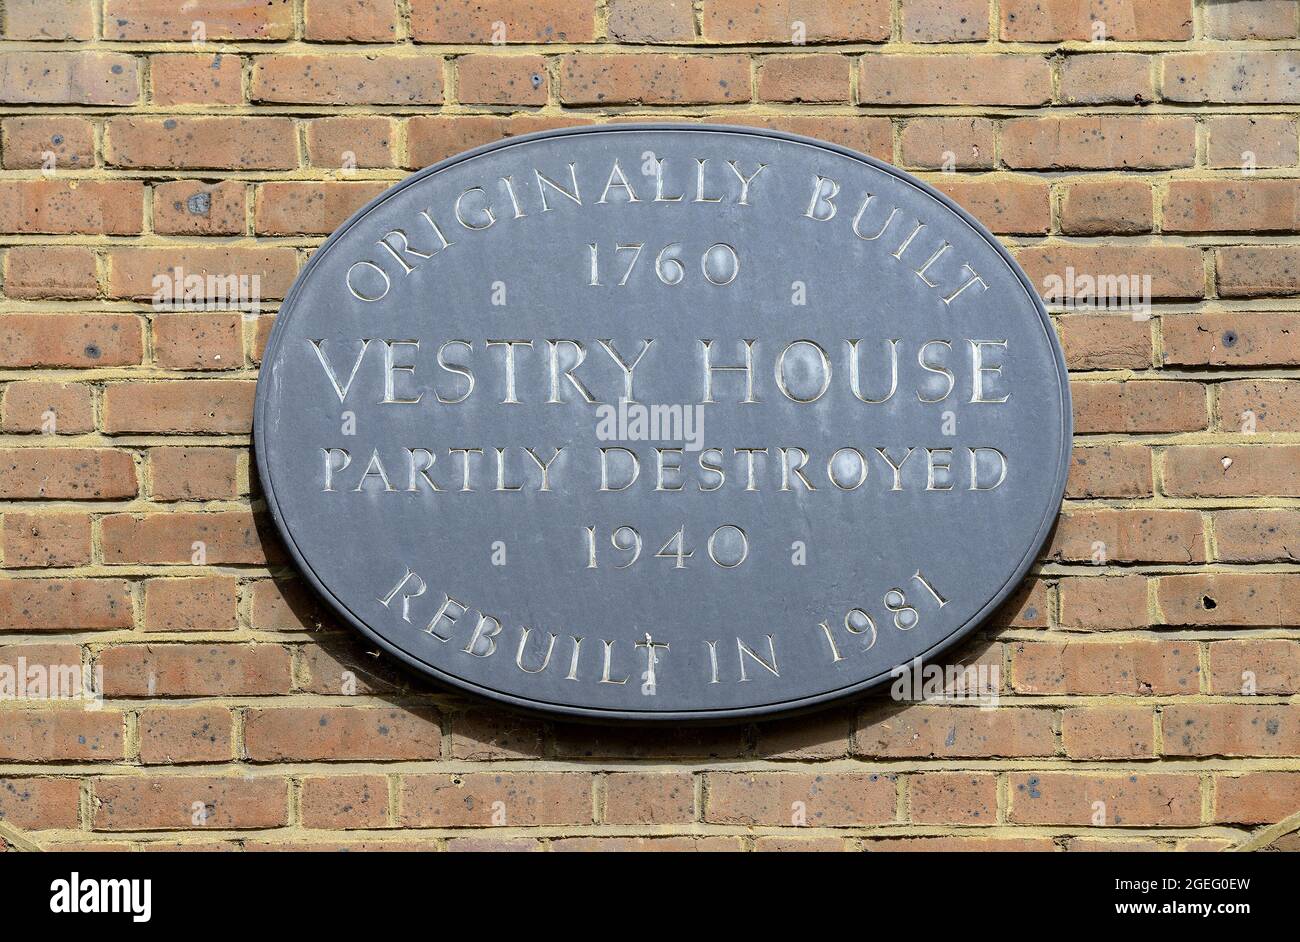 Londres, Royaume-Uni. Plaque commémorative: 'Construite à l'origine en 1760 Vestry House a partiellement détruit 1940 reconstruit en 1981' dans Newgate Street Banque D'Images